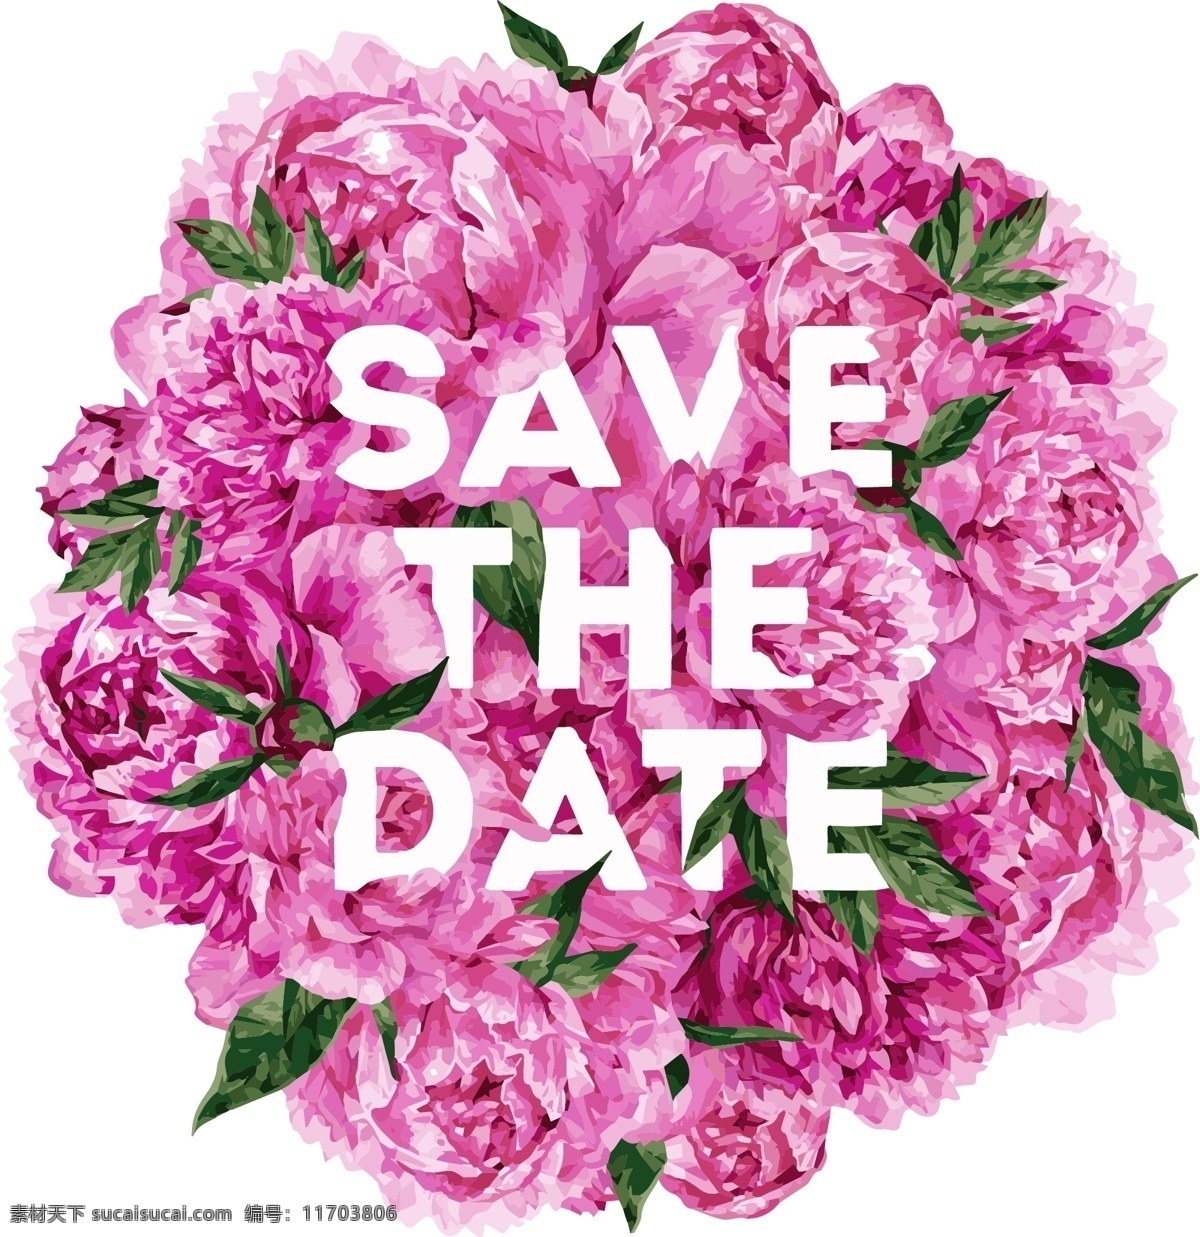 婚礼 邀请 矢量 粉色 叶子 花卉 牡丹 矢量素材 设计素材